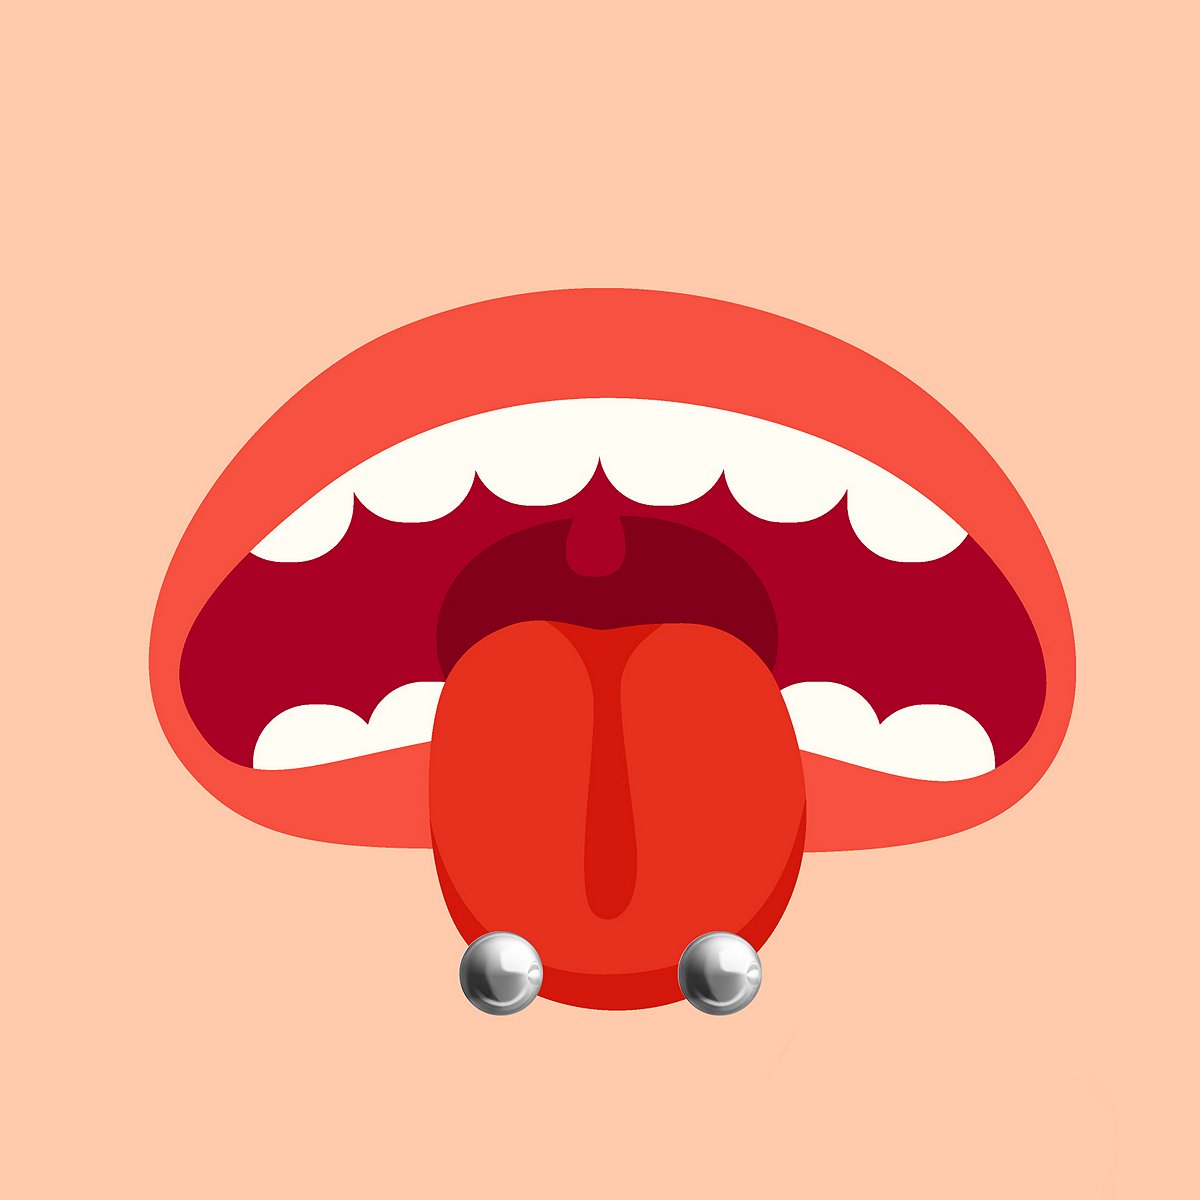 babita magar share double tongue piercing tip photos